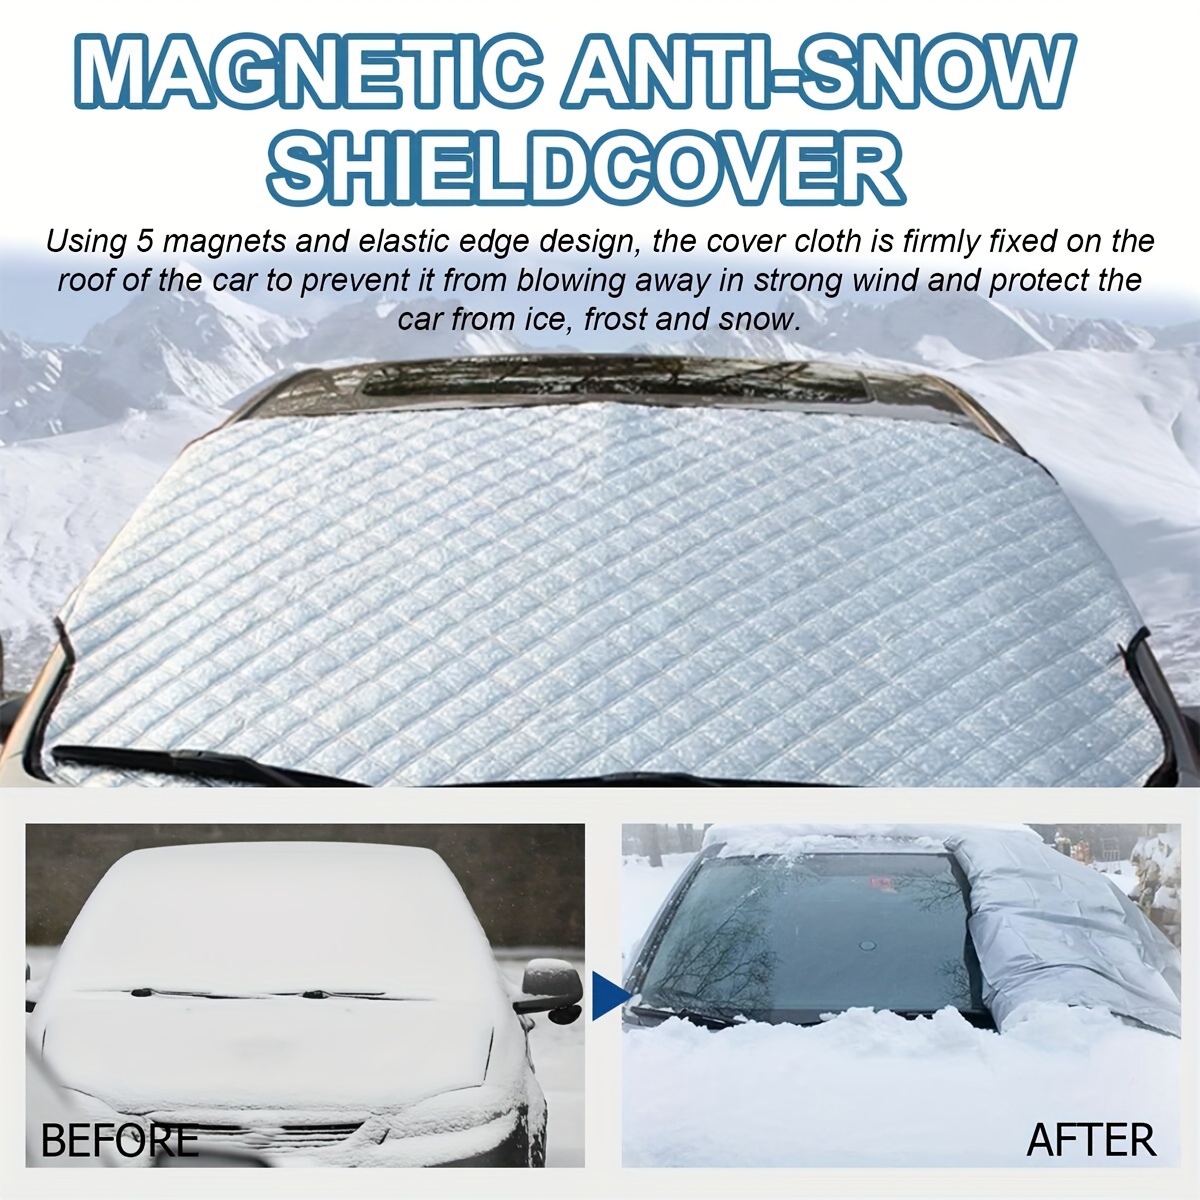 AntisnowCover®  Magnetische Anti-Schnee-Decke – Dumelt Berlin